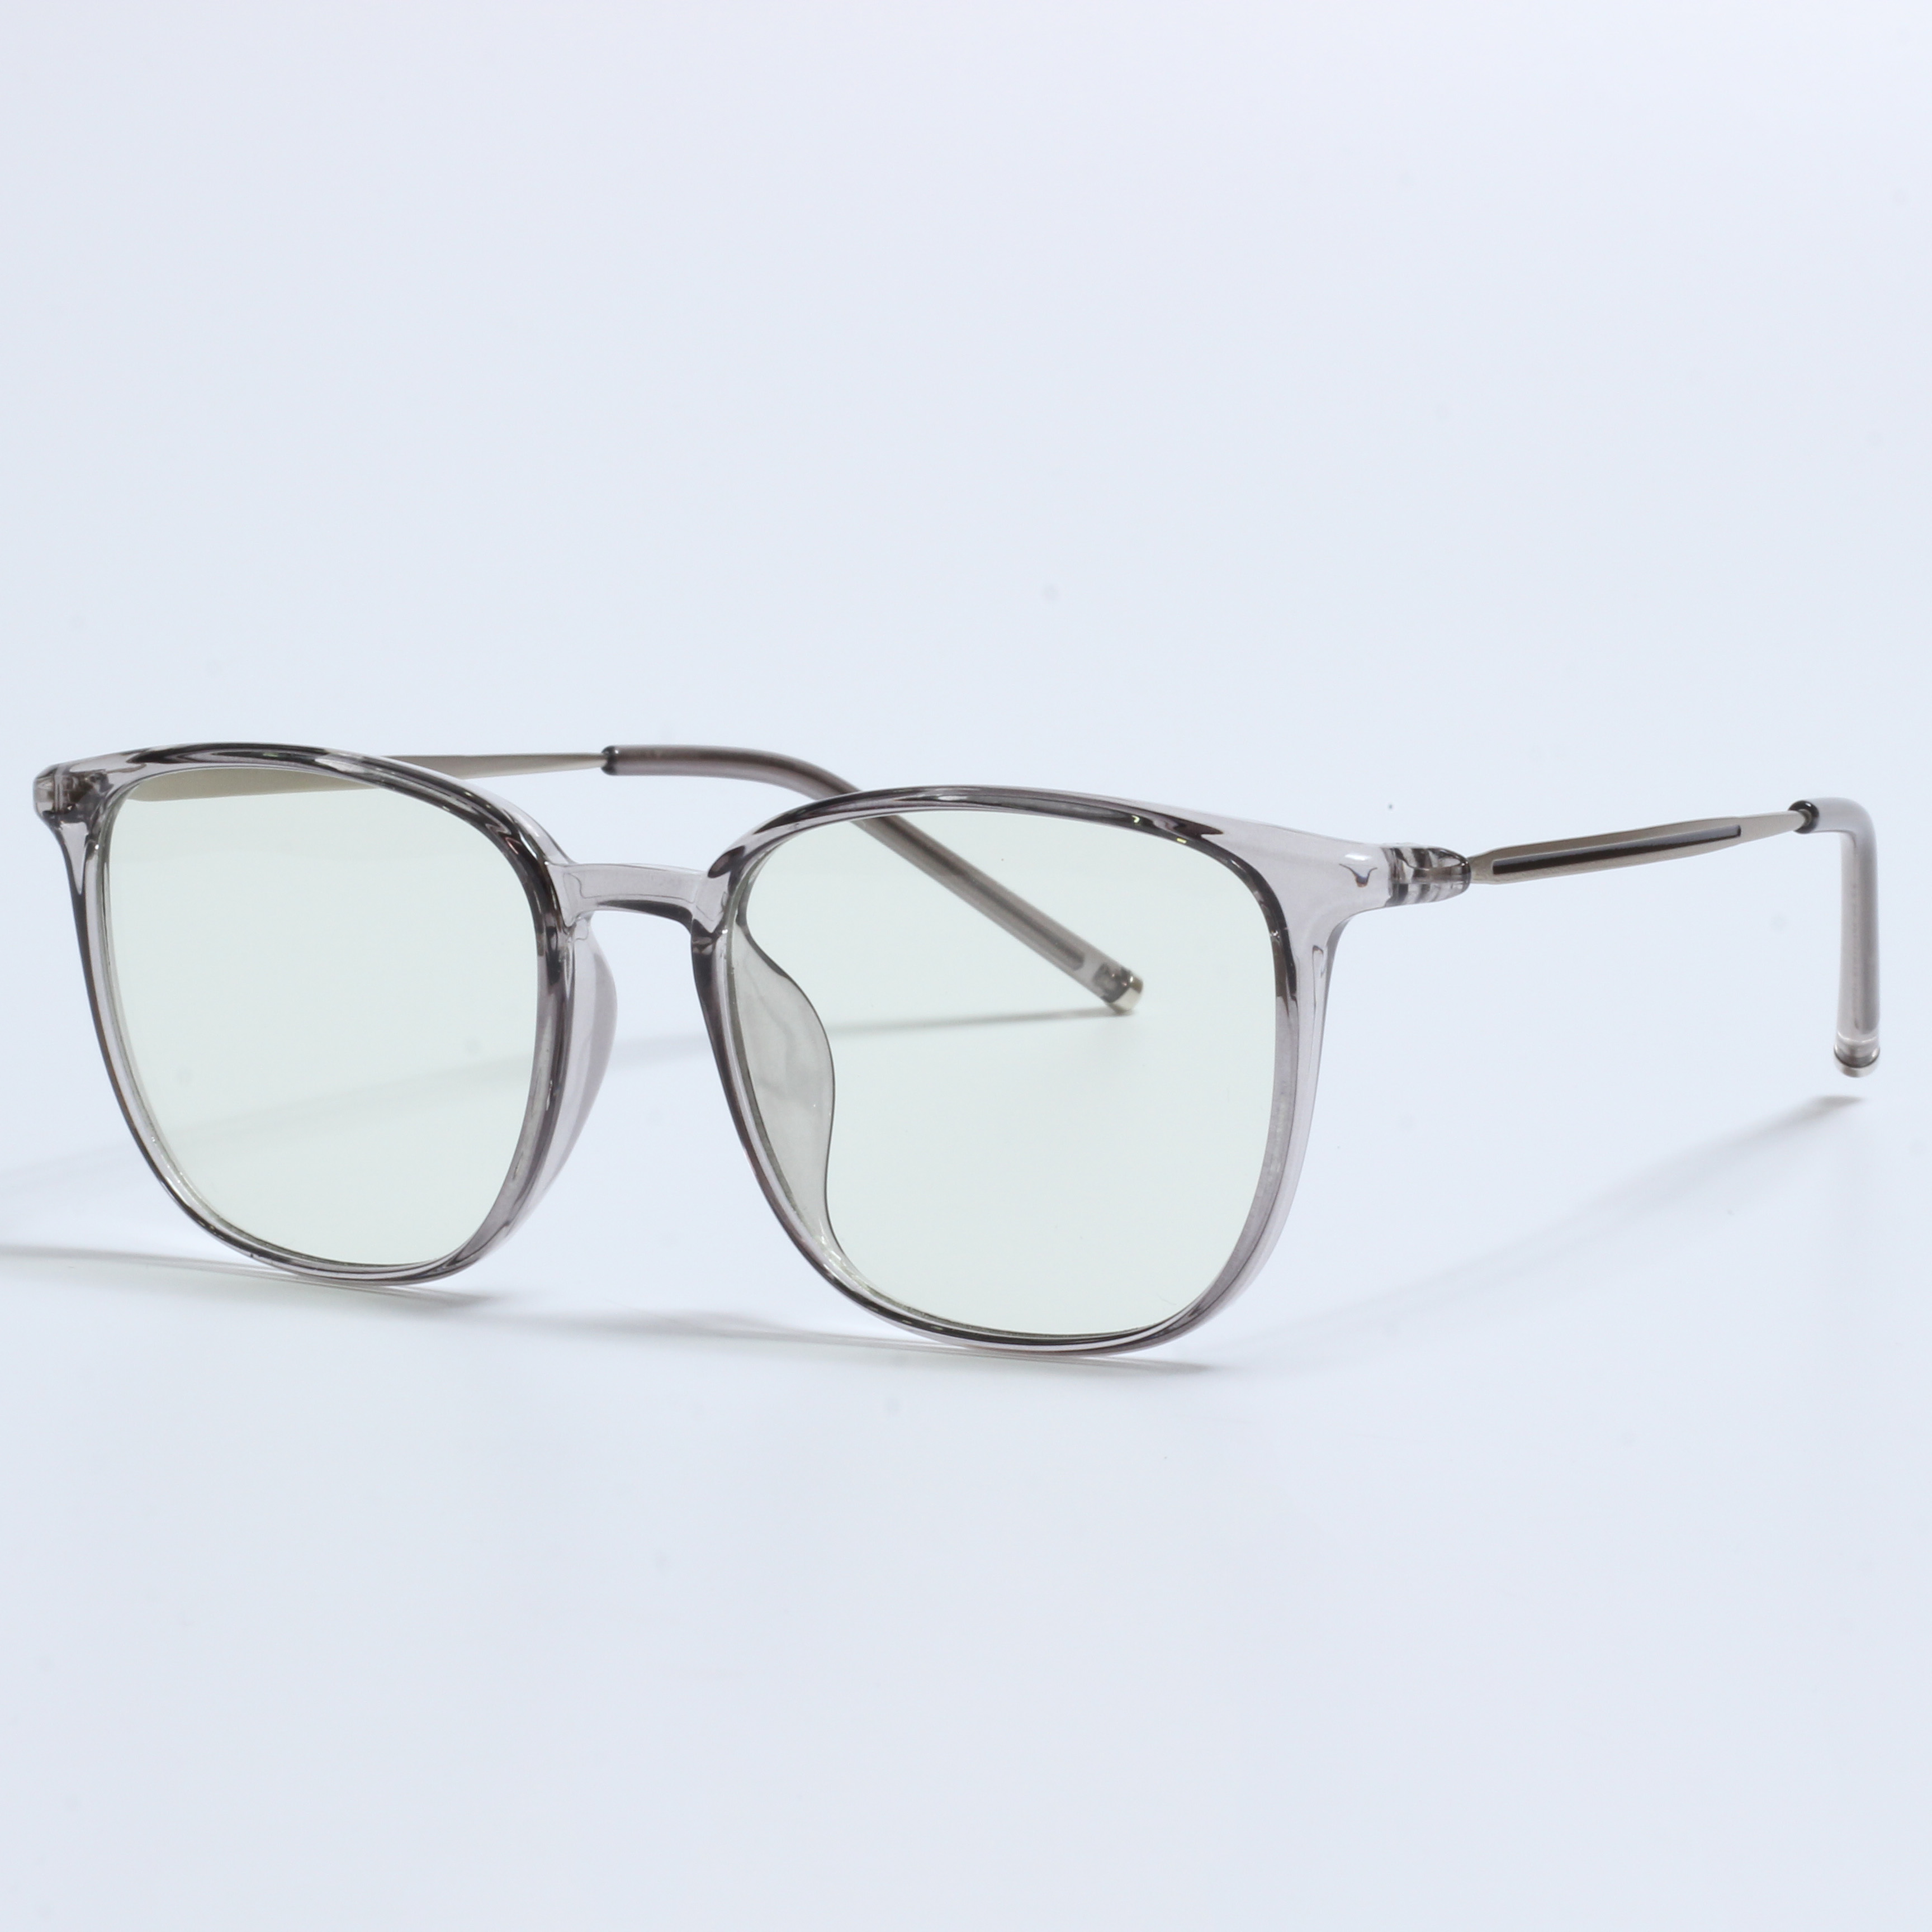 New retro lunette anti lumiere designer prescription glasses (4)